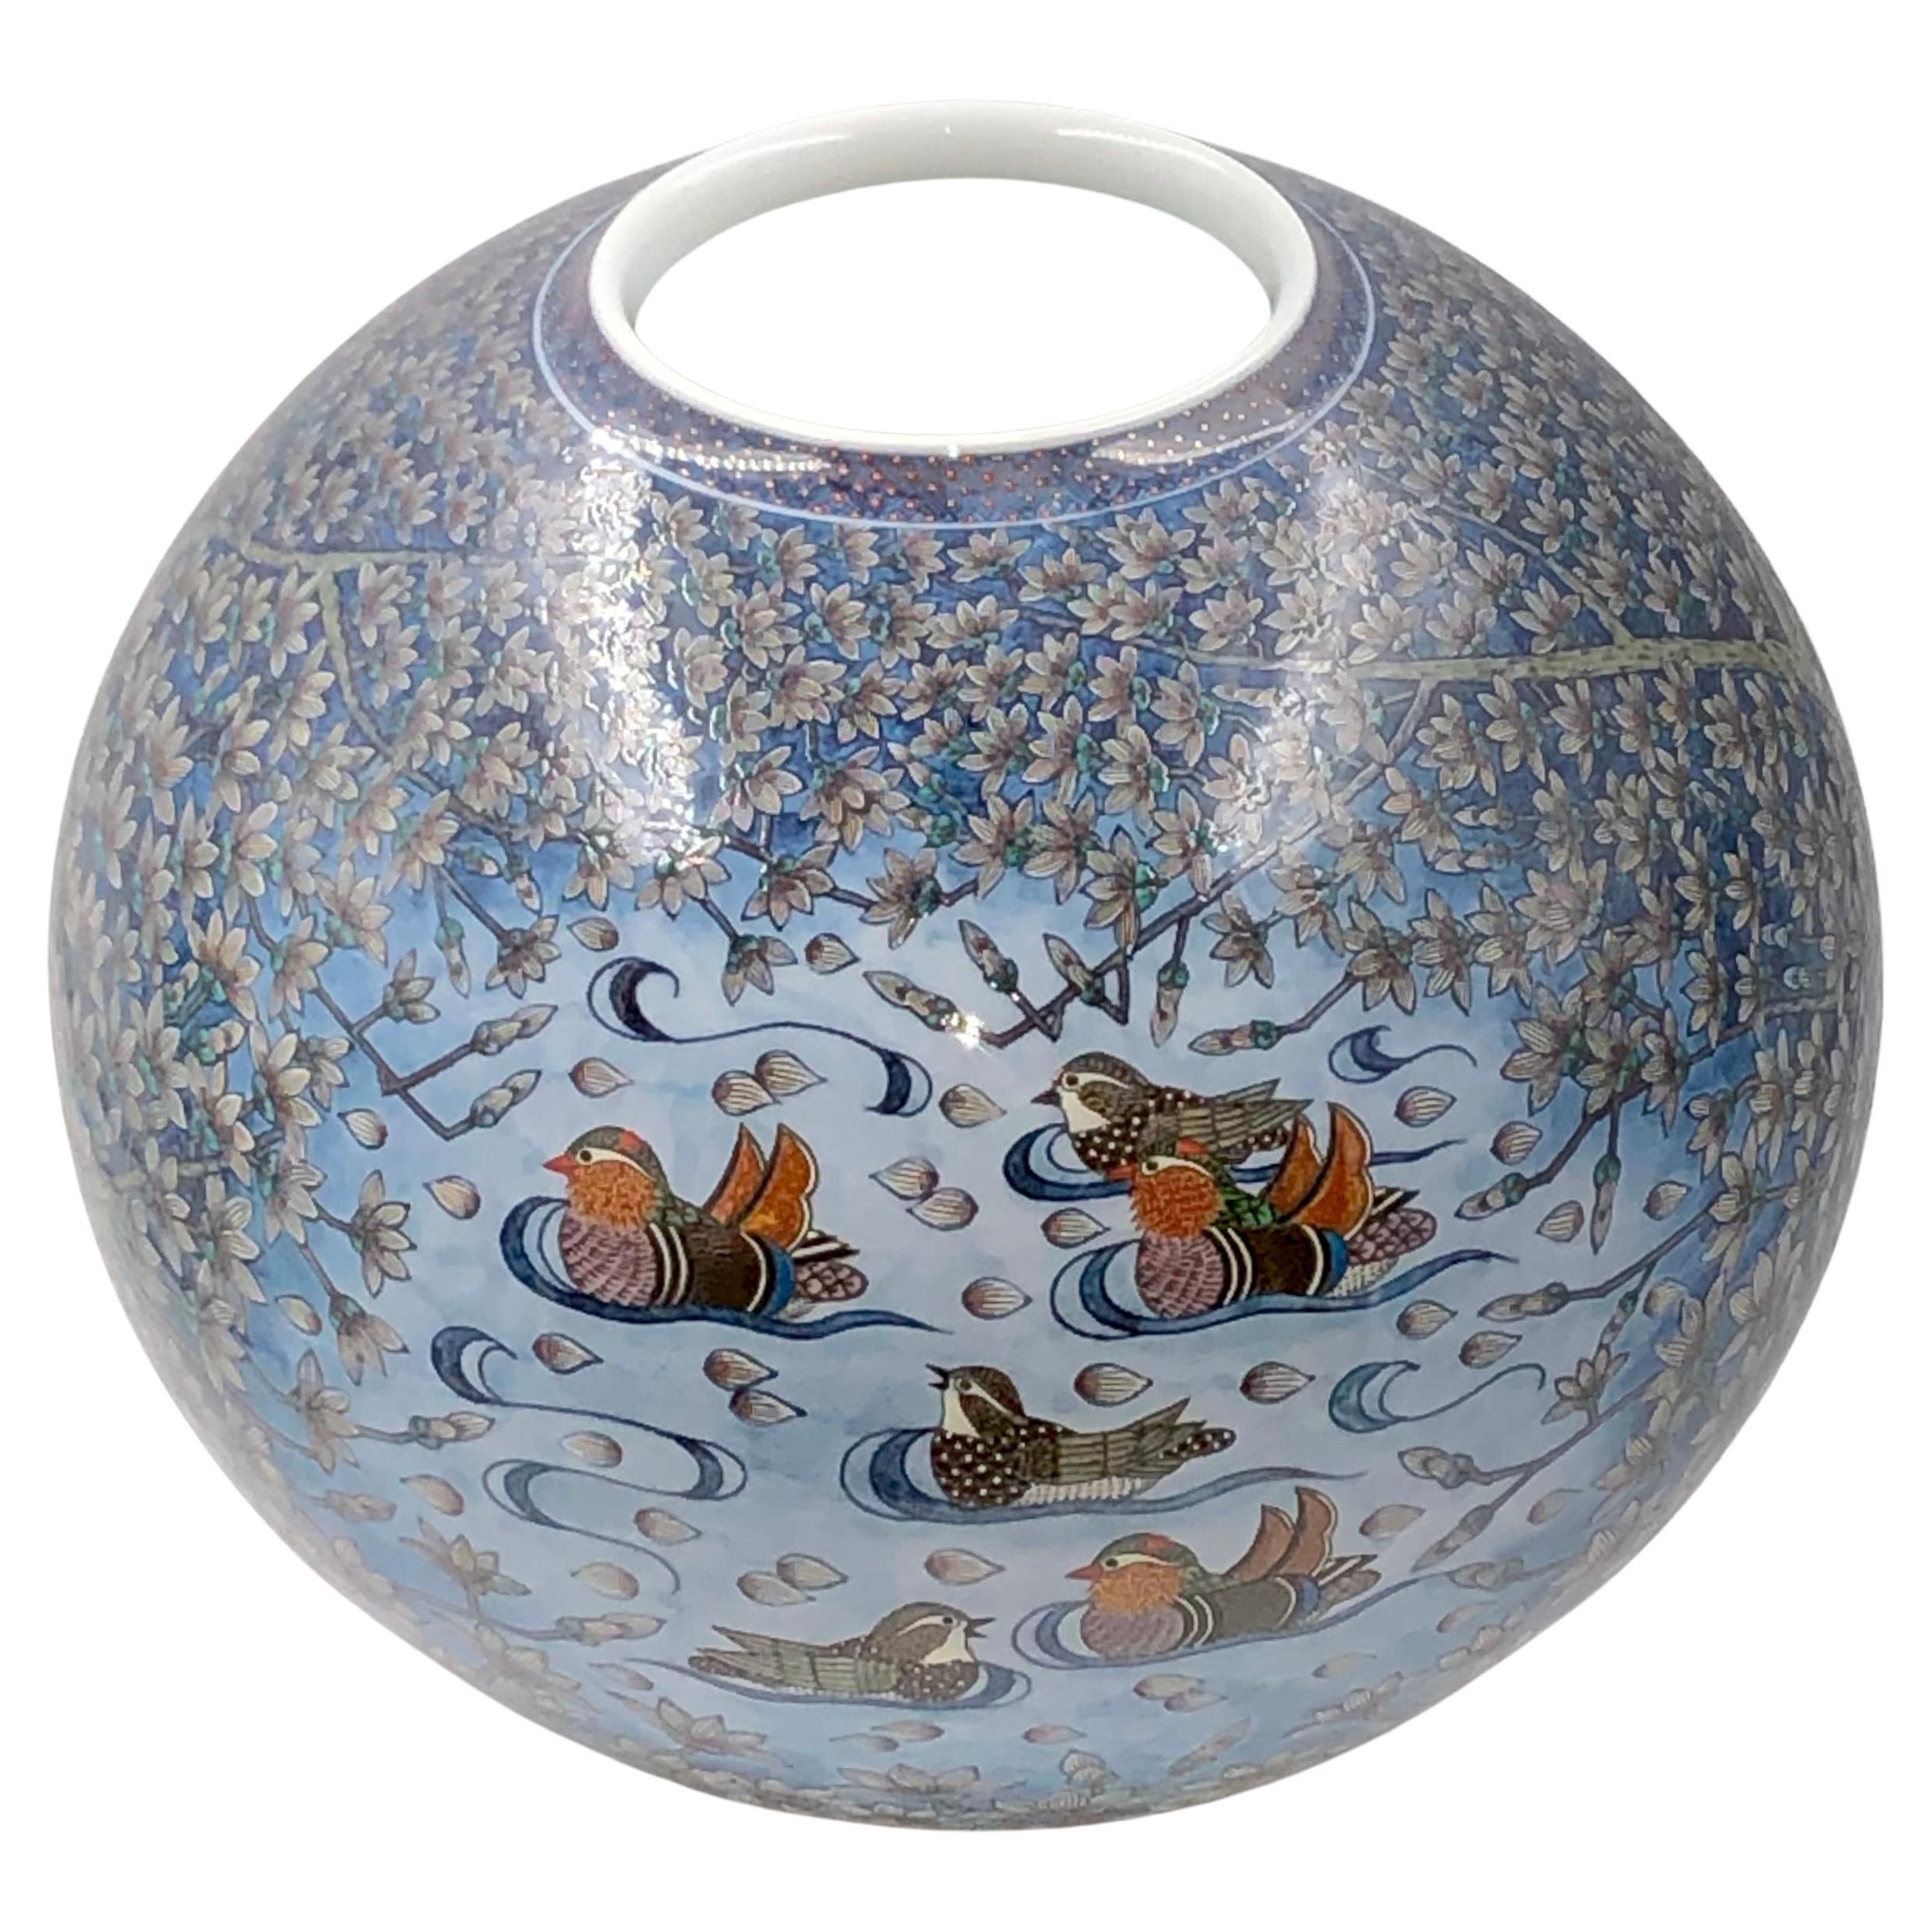 Außergewöhnliche zeitgenössische dekorative Porzellanvase in japanischer Museumsqualität, aufwändig handbemalt in atemberaubenden Blautönen auf einem wunderschön geformten Korpus, ein signiertes Meisterwerk des Porzellankünstlers der zweiten